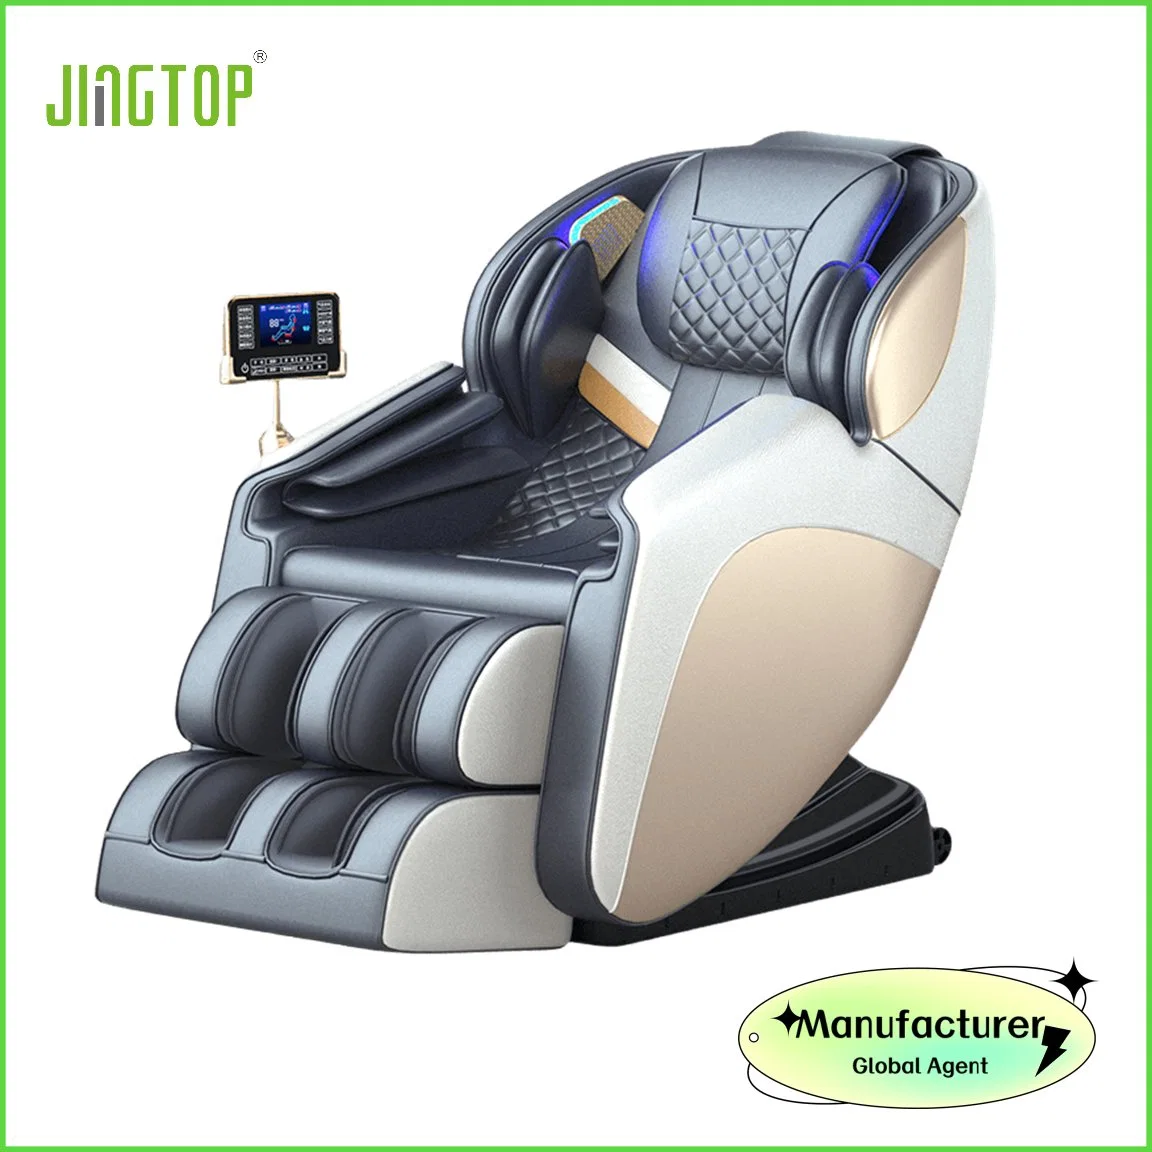 وحدة التسخين الذكية المباشرة المدمجة في مصنع Jingtop التحكم في السخان Ai Vocie كرسي التدليك "غي"